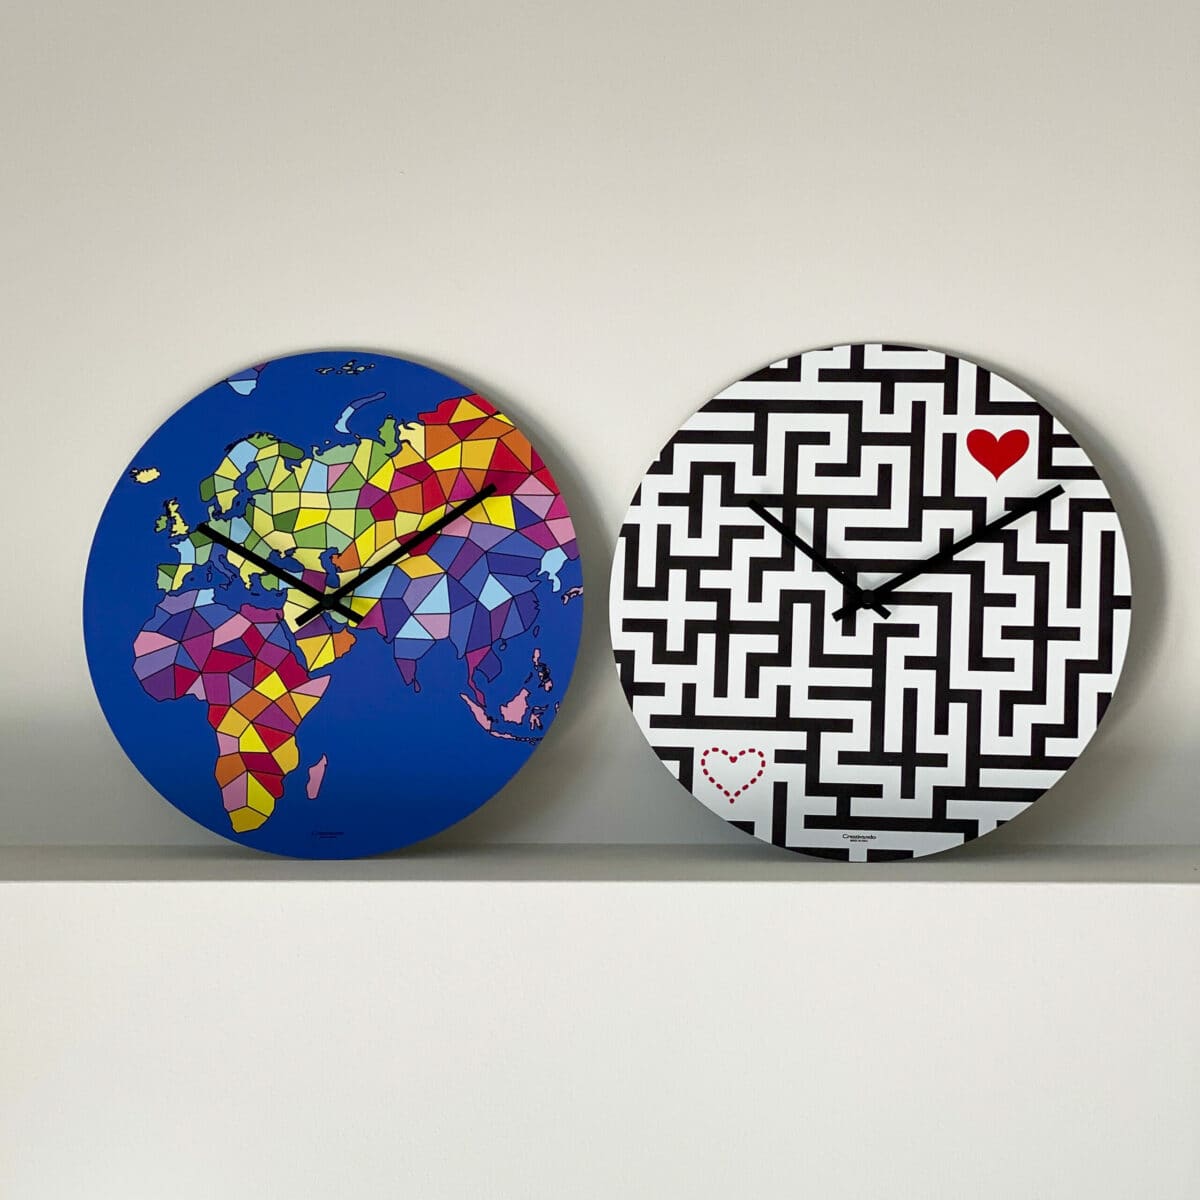 due orologi rotondi sono posti uno accanto all'altro: uno presenta un labirinto nero dove due cuoricini sono posti alle estremità mentre l'altro presenta una vista dell'eurasia e africa interpretata artisticamente.